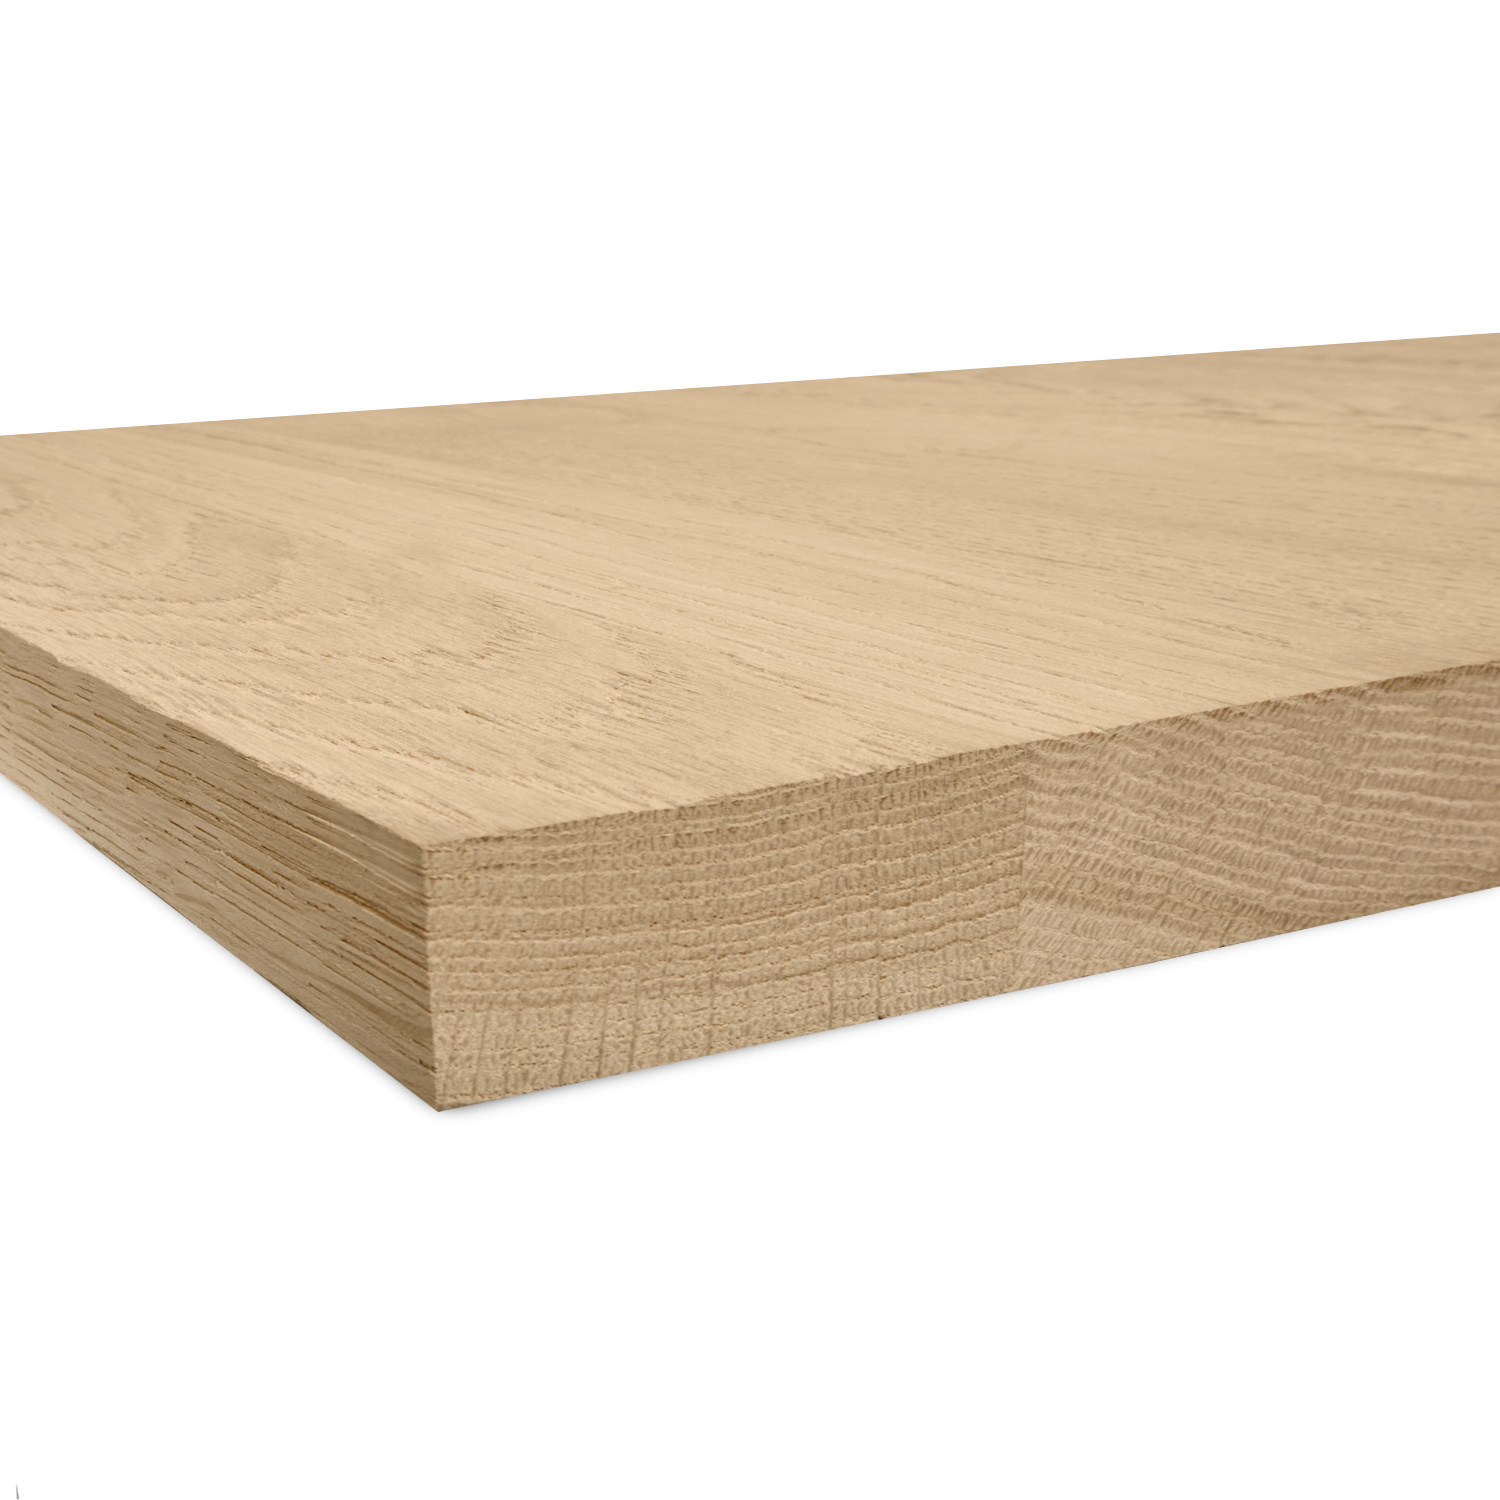  Leimholzplatte Eiche nach Maß - 4 cm dick - Eichenholz A-Qualität- Sandgestrahlt - Eiche Massivholzplatte - verleimt & künstlich getrocknet (HF 8-12%) - 15-120x20-300 cm